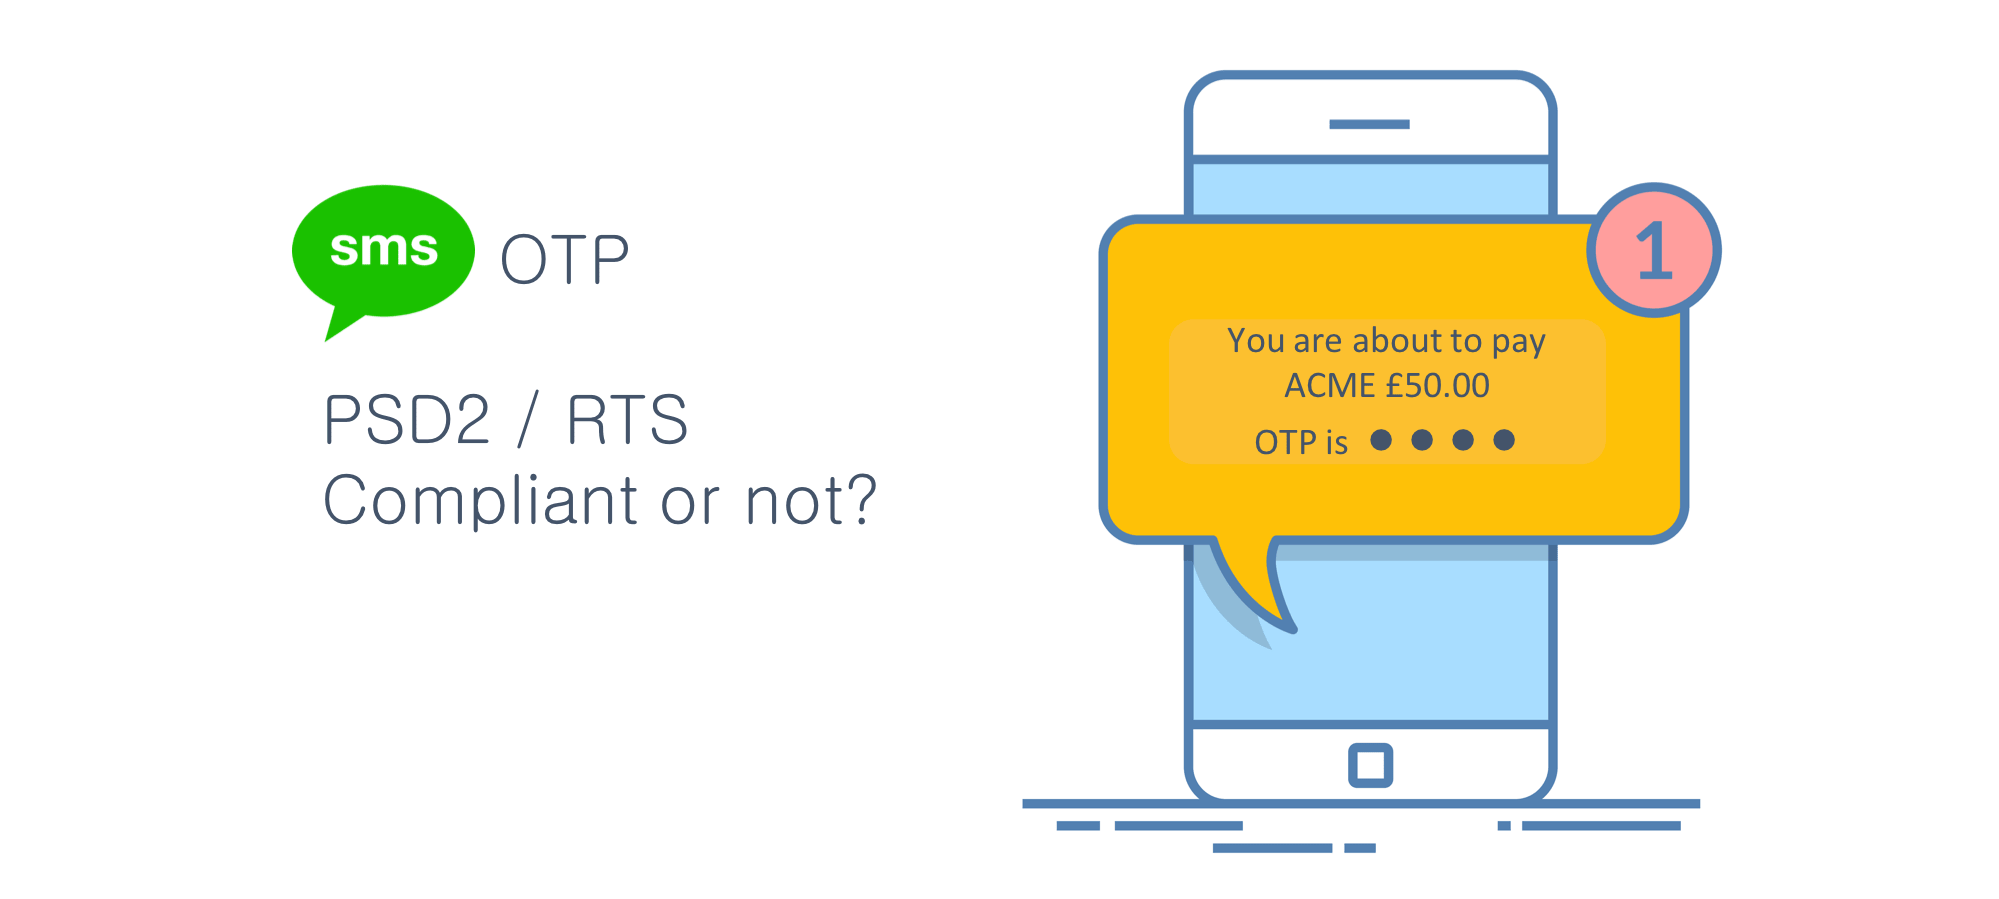 Dịch vụ OTP marketing SMS được sử dụng phổ biến hiện nay